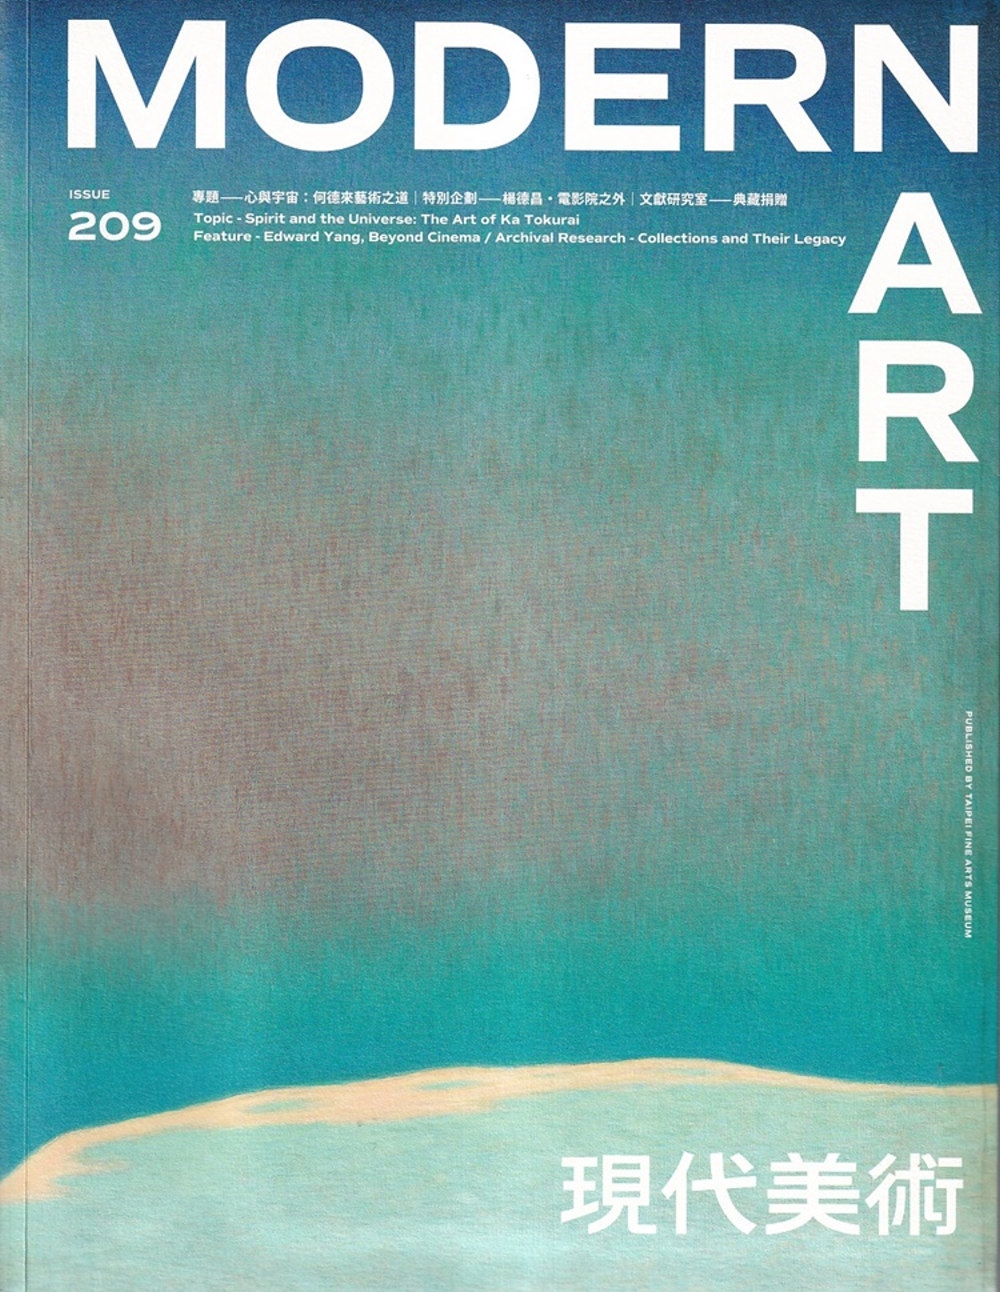 現代美術[季刊]NO：209期[112/08]兩種封面隨機出刊